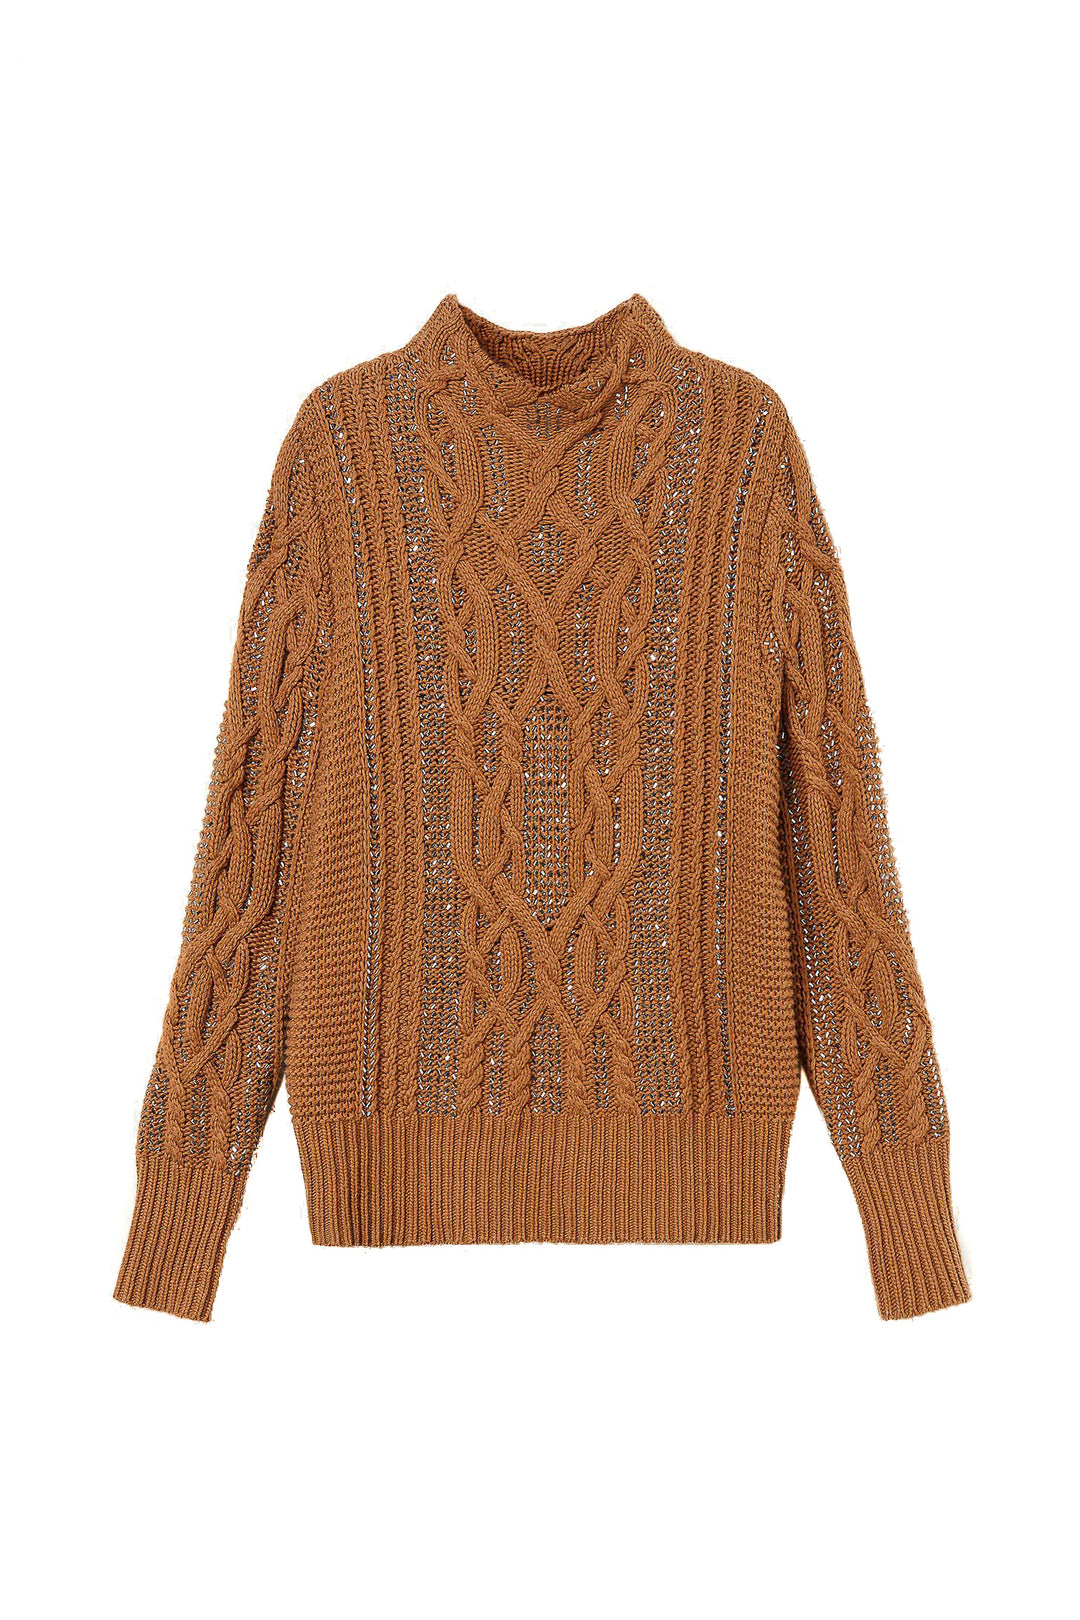 TWINSET Maxi maglia marrone in misto lana con strass - Mancinelli 1954